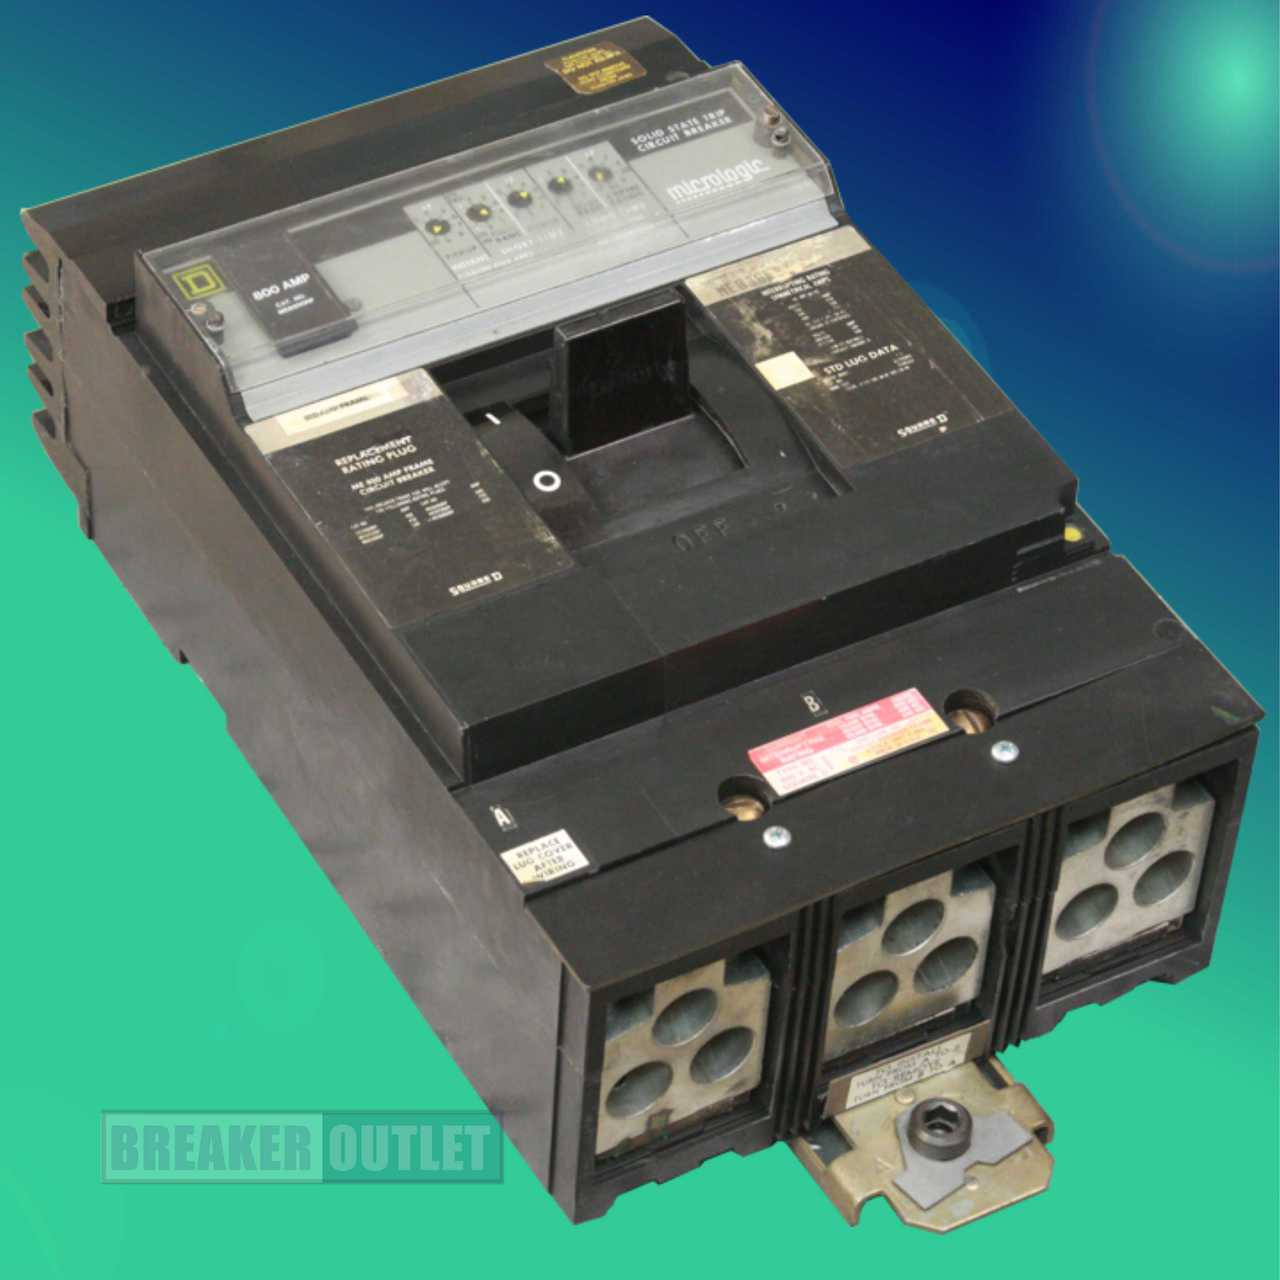 ME836800LSI Obsolete Breaker